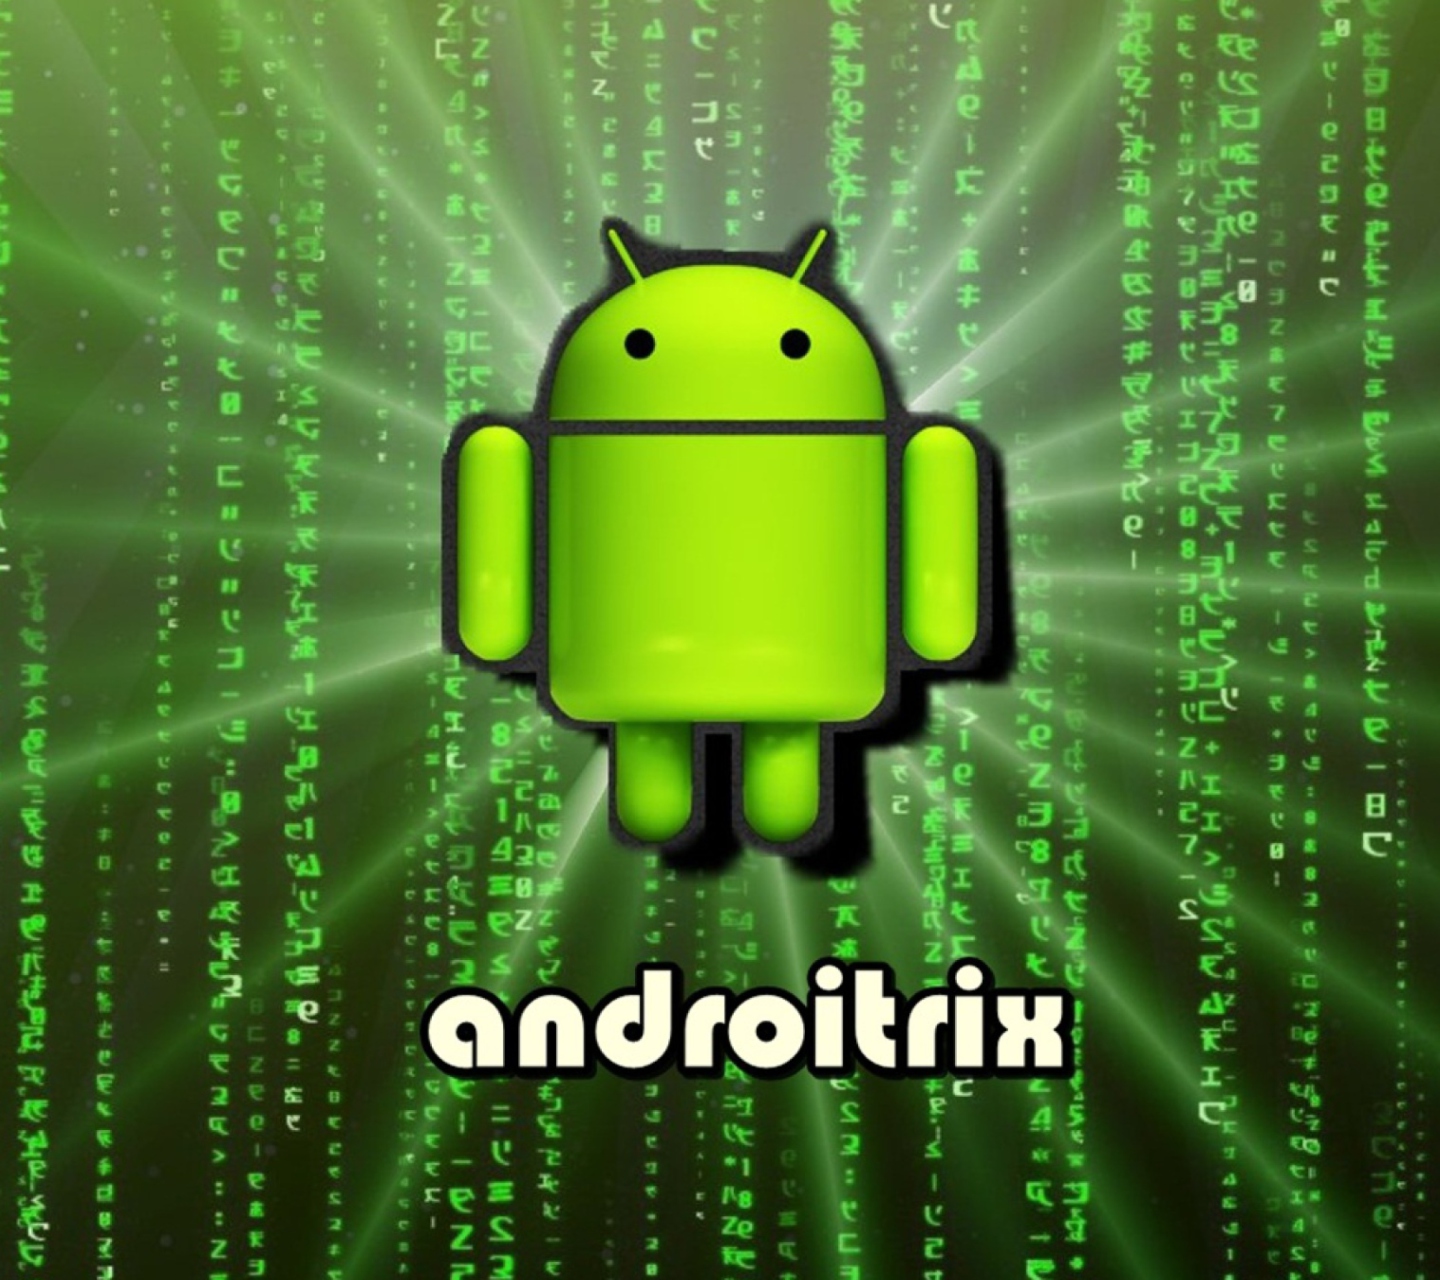 Android Matrix screenshot #1 1440x1280